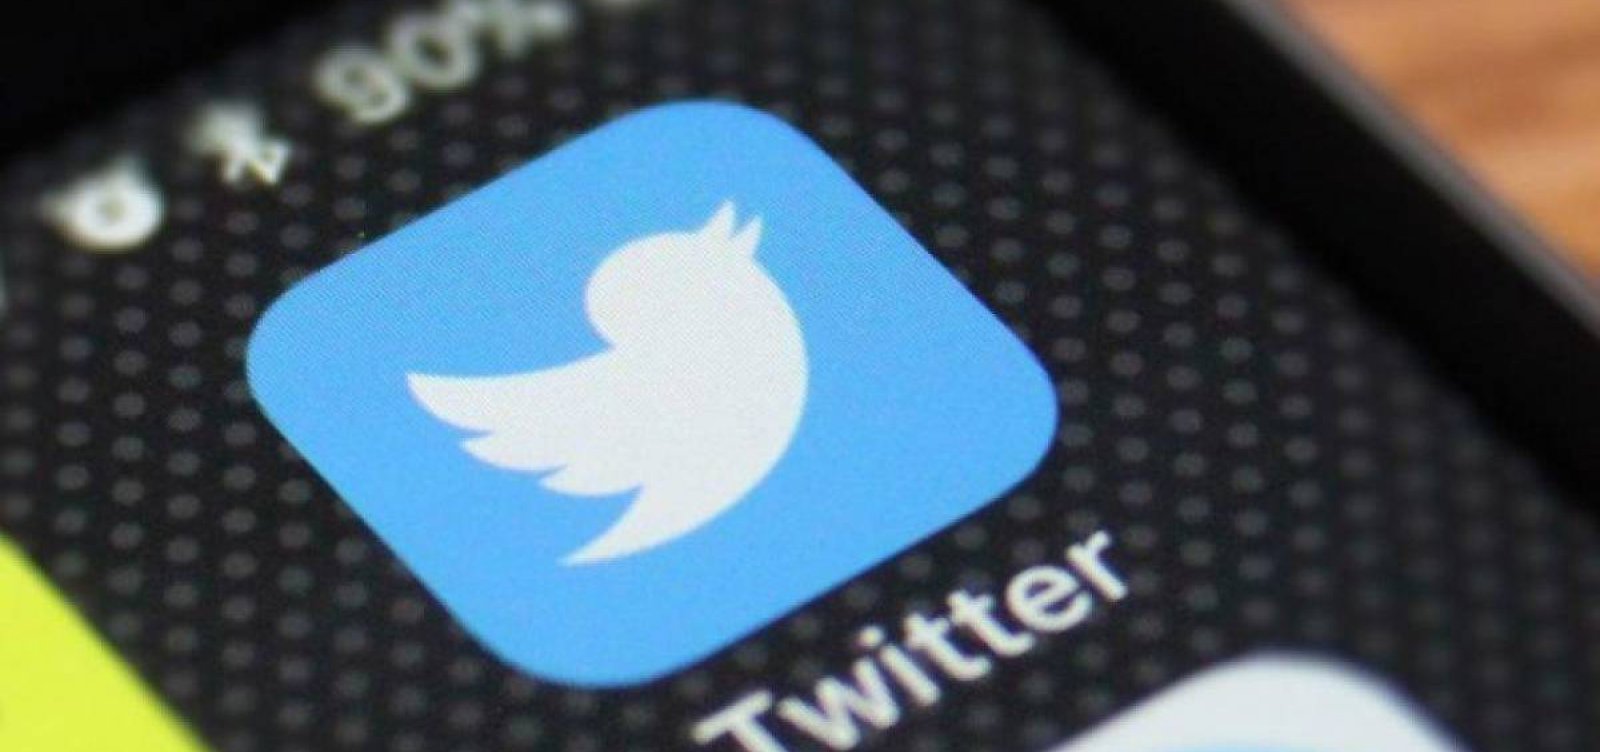 Robôs bolsonaristas têm queda no Twitter depois de ação na PF